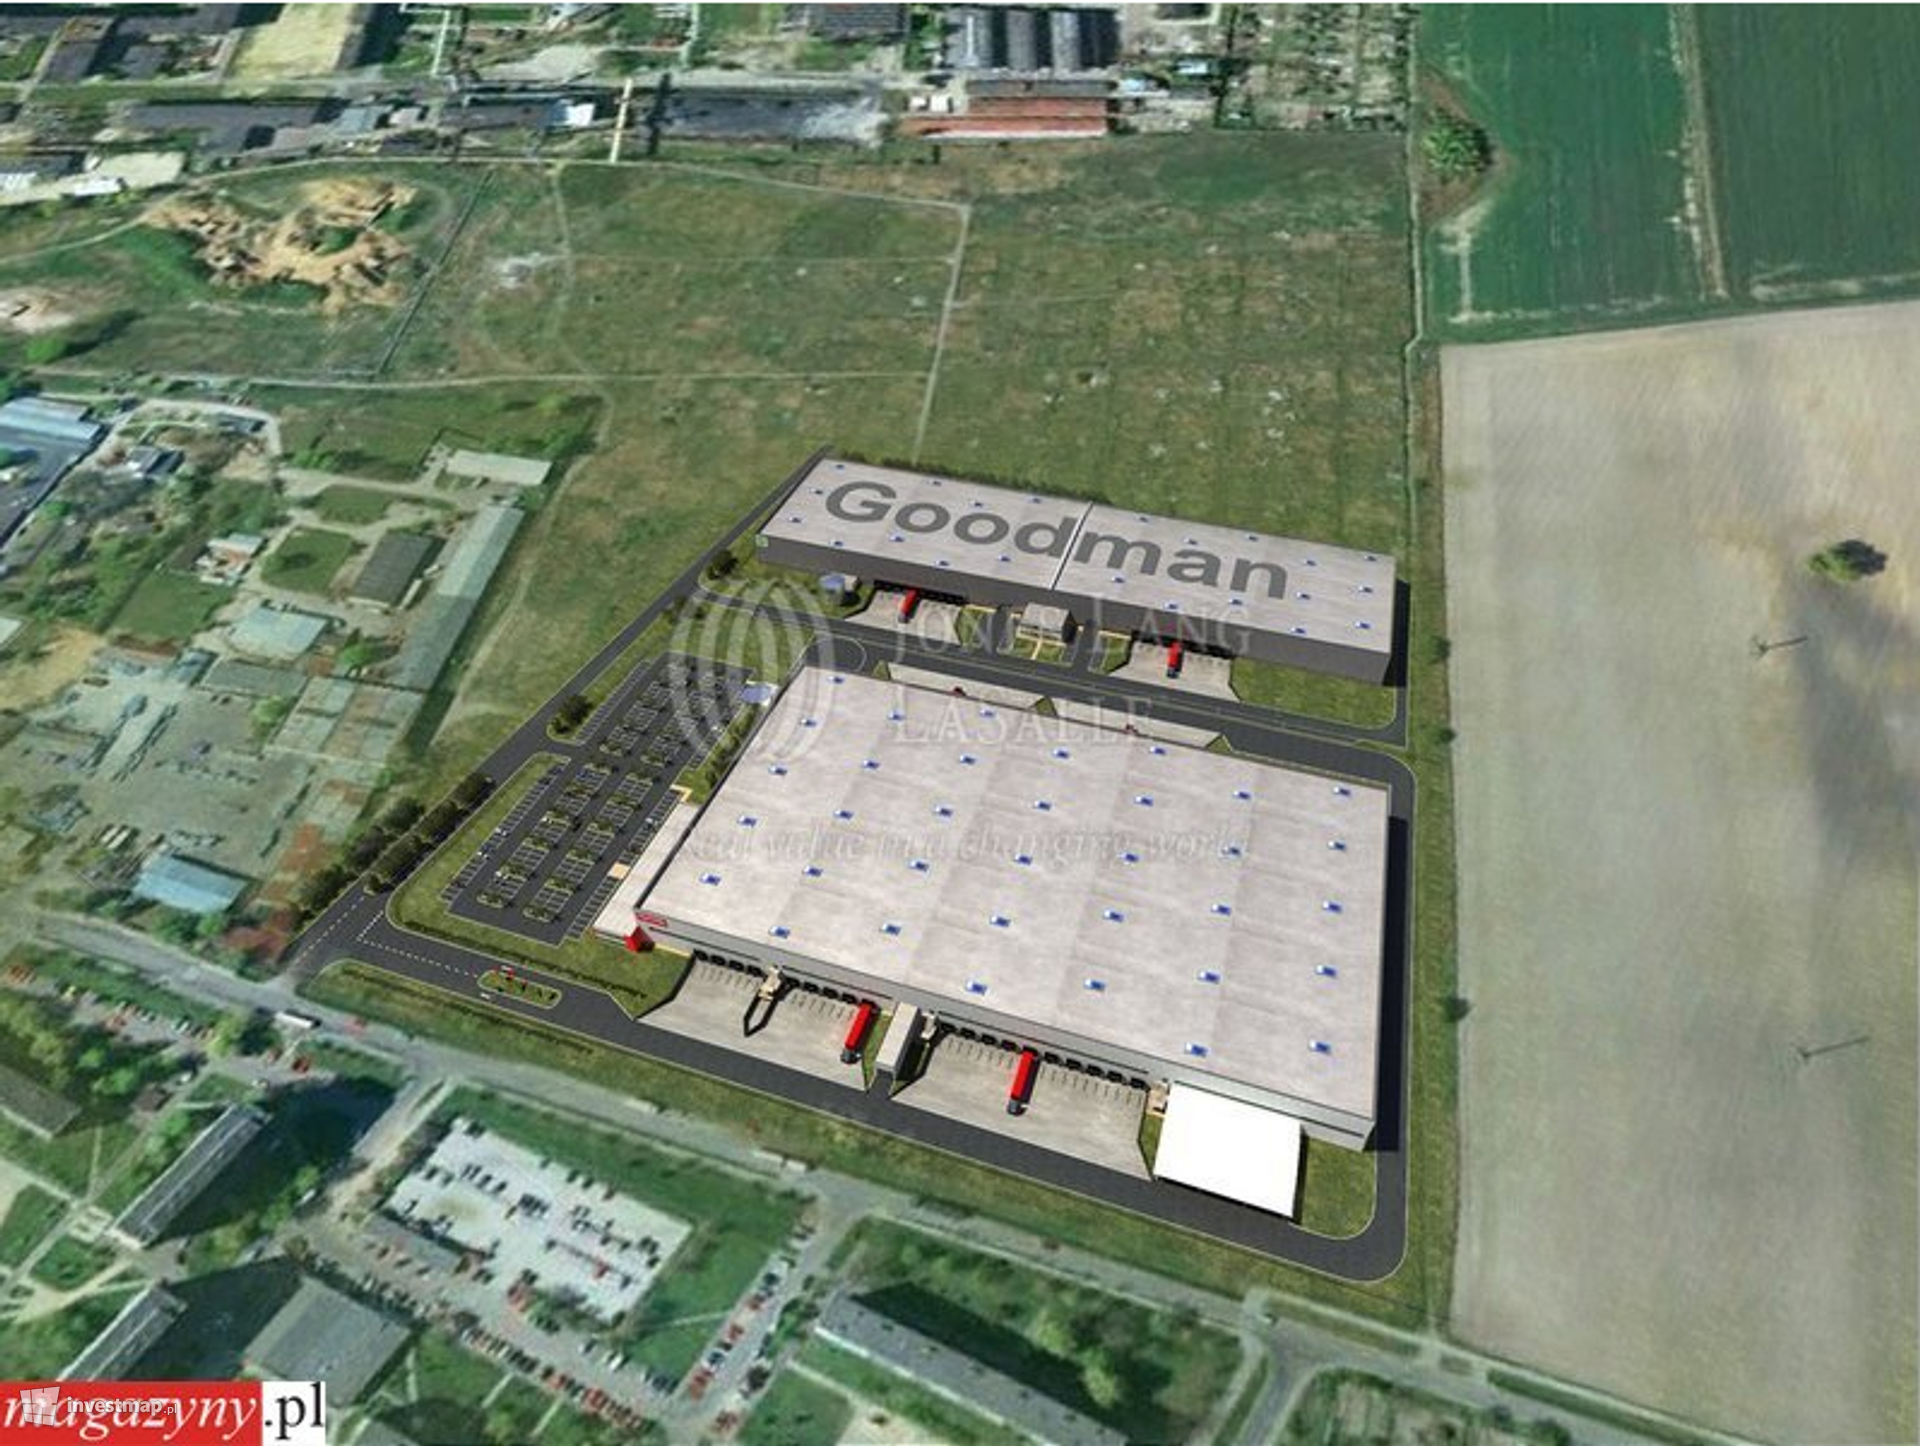 [Wrocław] Goodman Wrocław East Logistics Centre